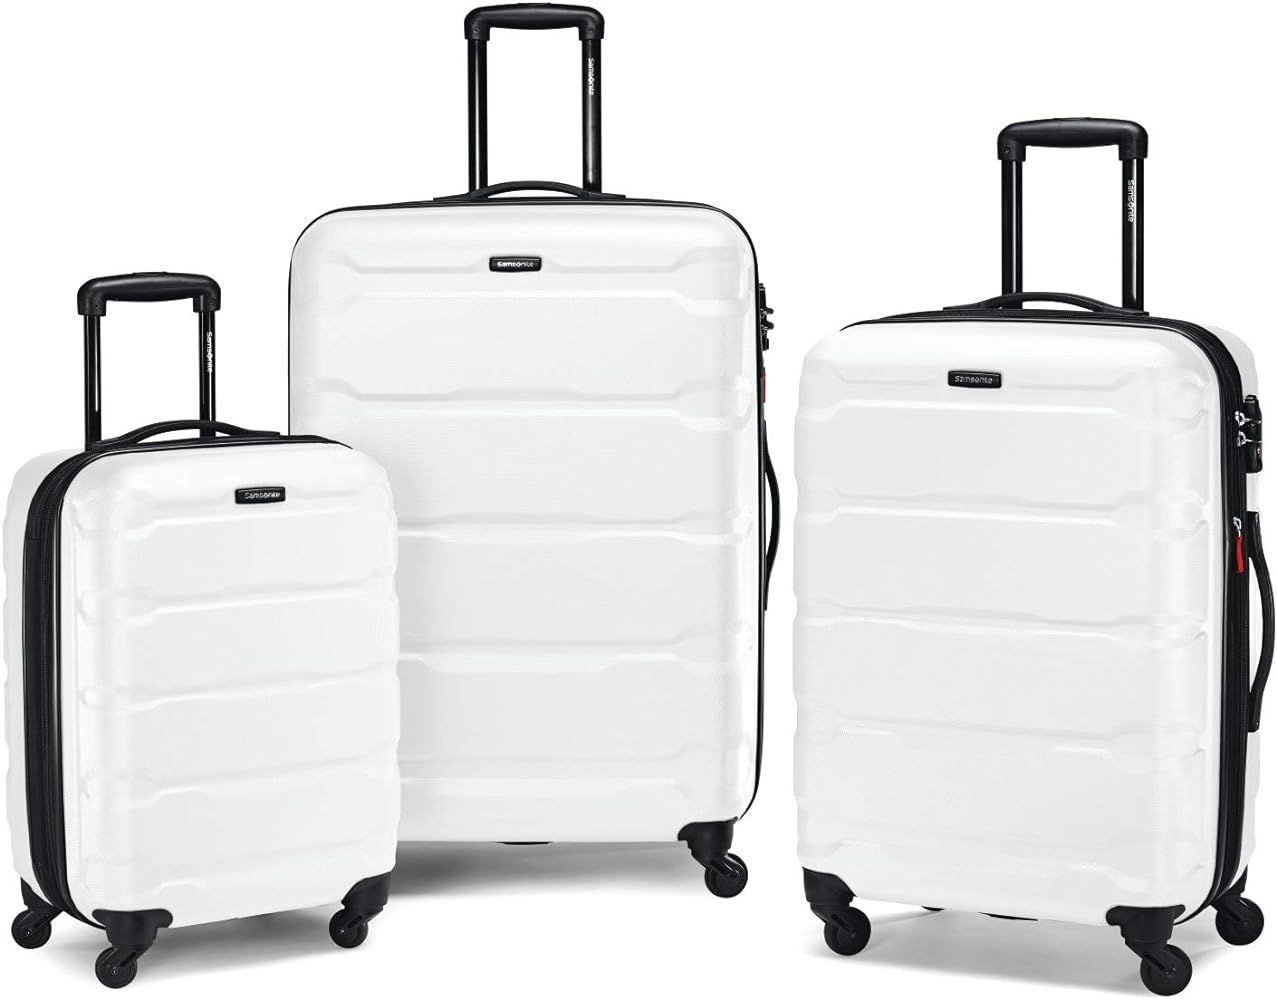 Samsonite Omni PC Hardside Expandable Luggage with Spinner Wheels, 3-Piece Set (20/24/28), White | Amazon (US)